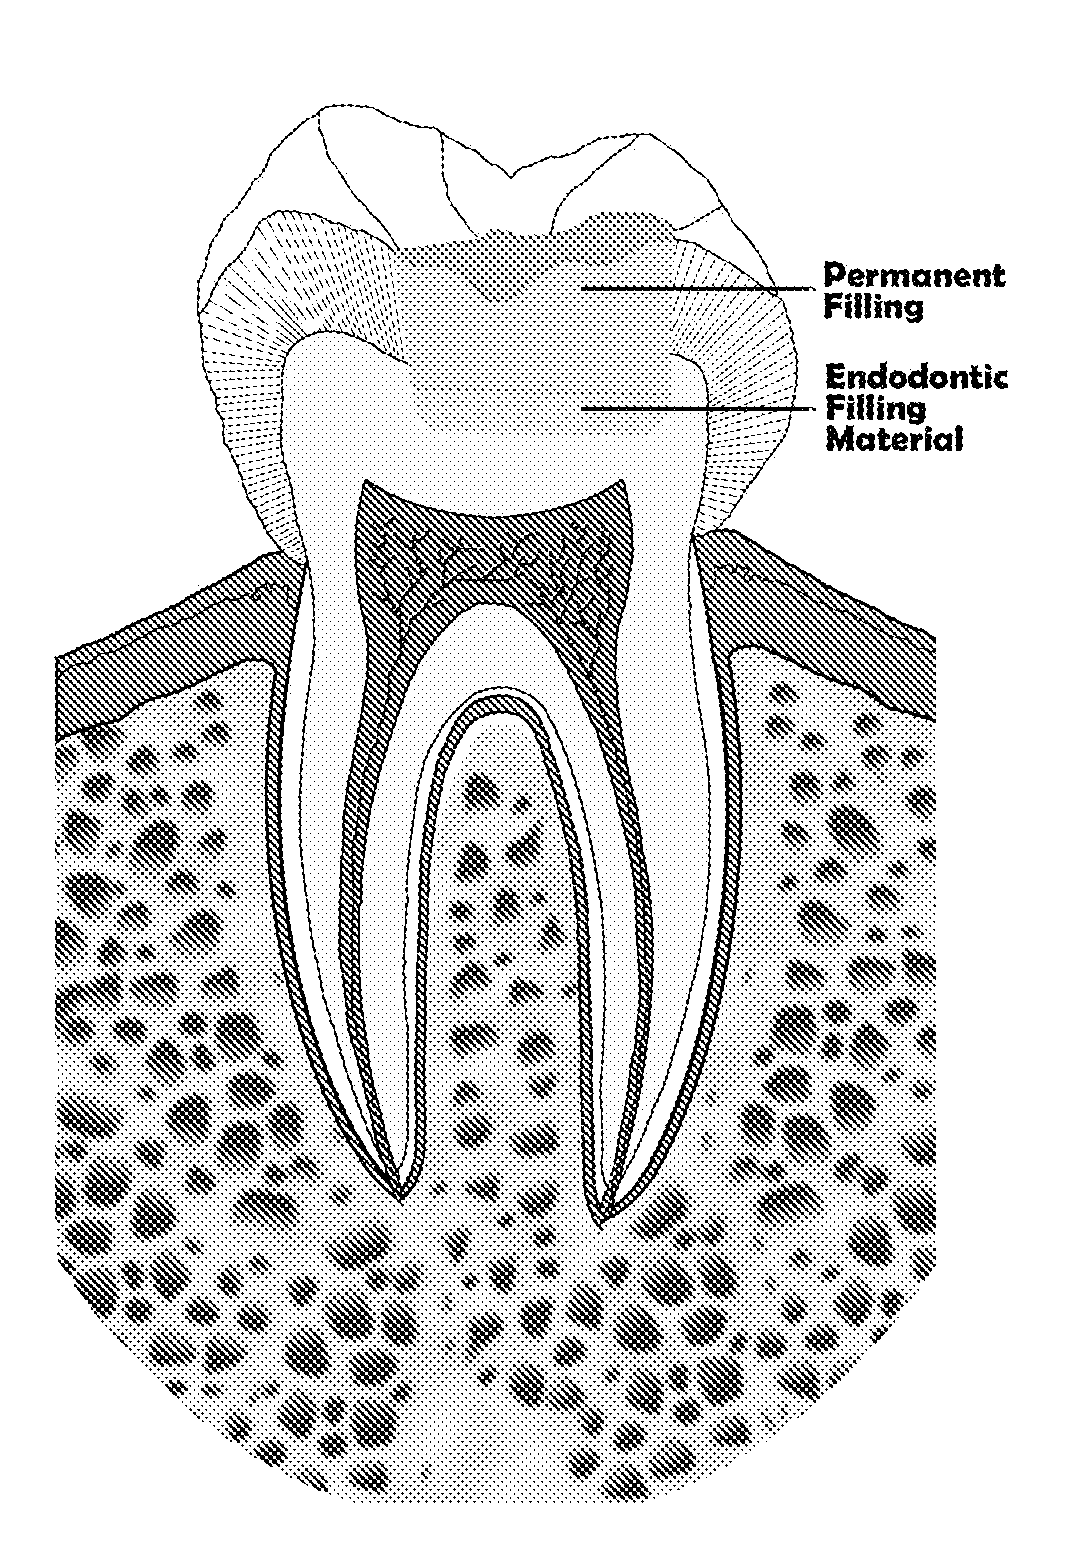 Endodontic filling material